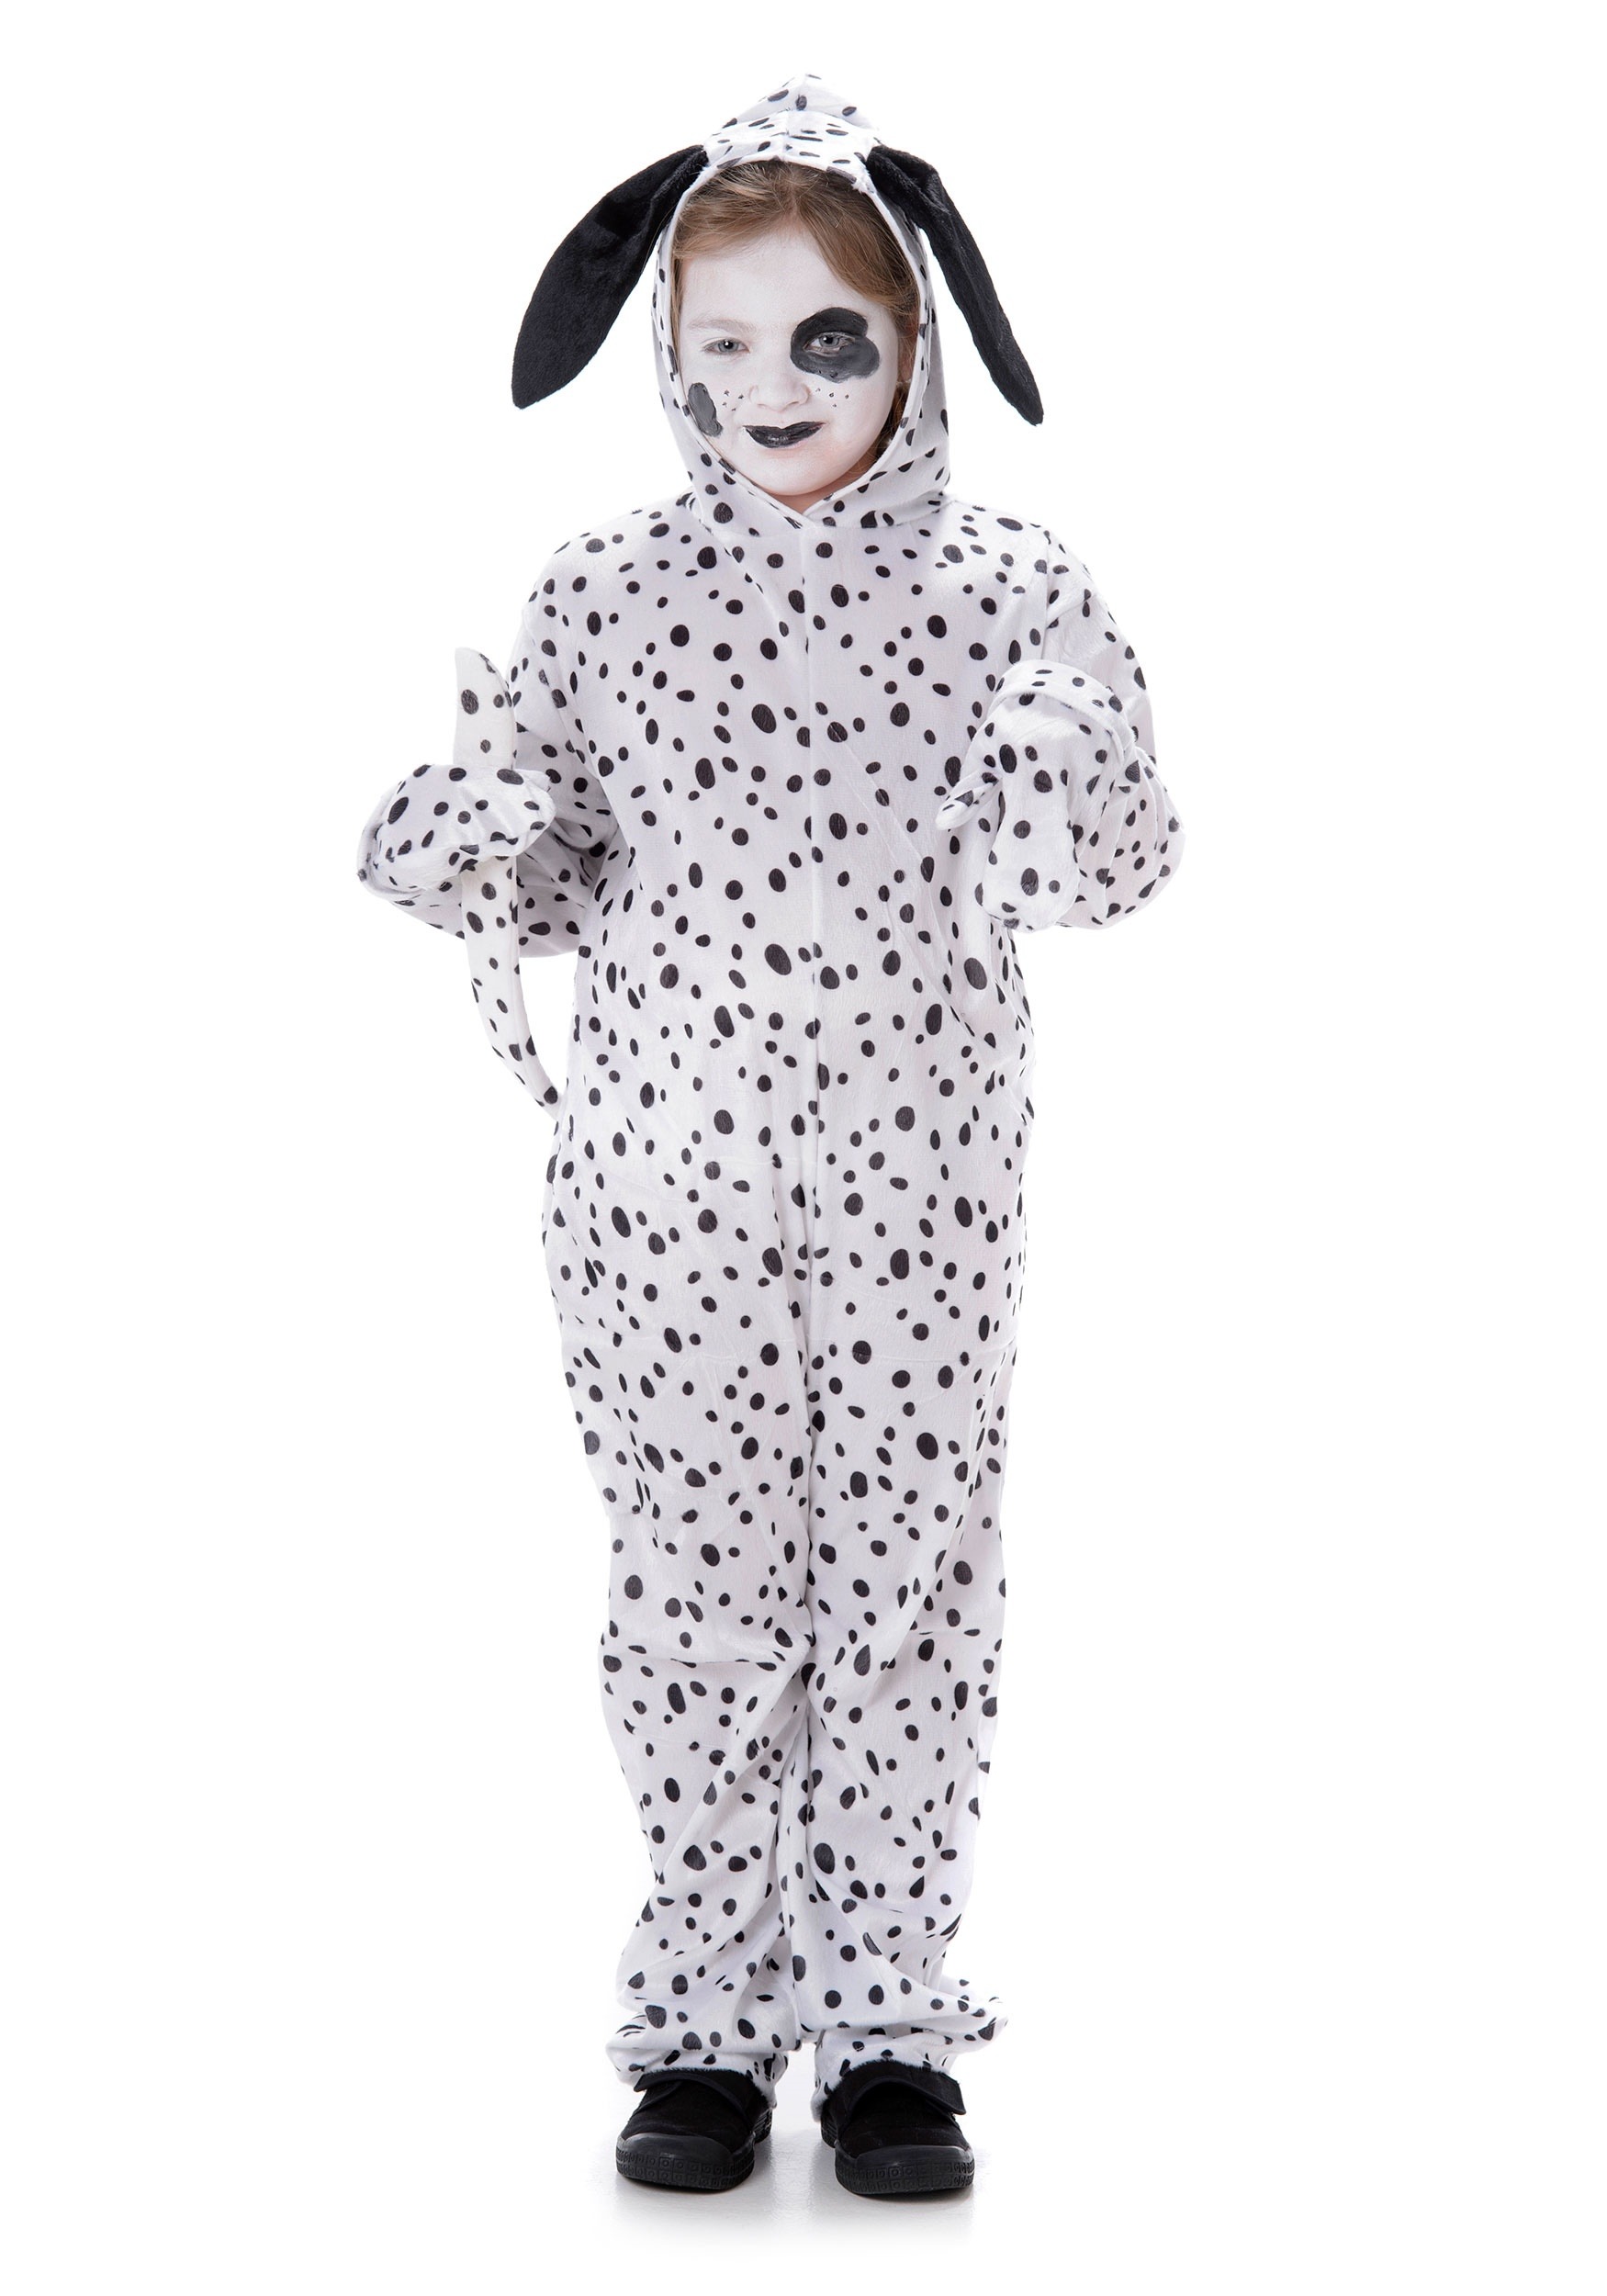 Child’s Dalmatian Costume